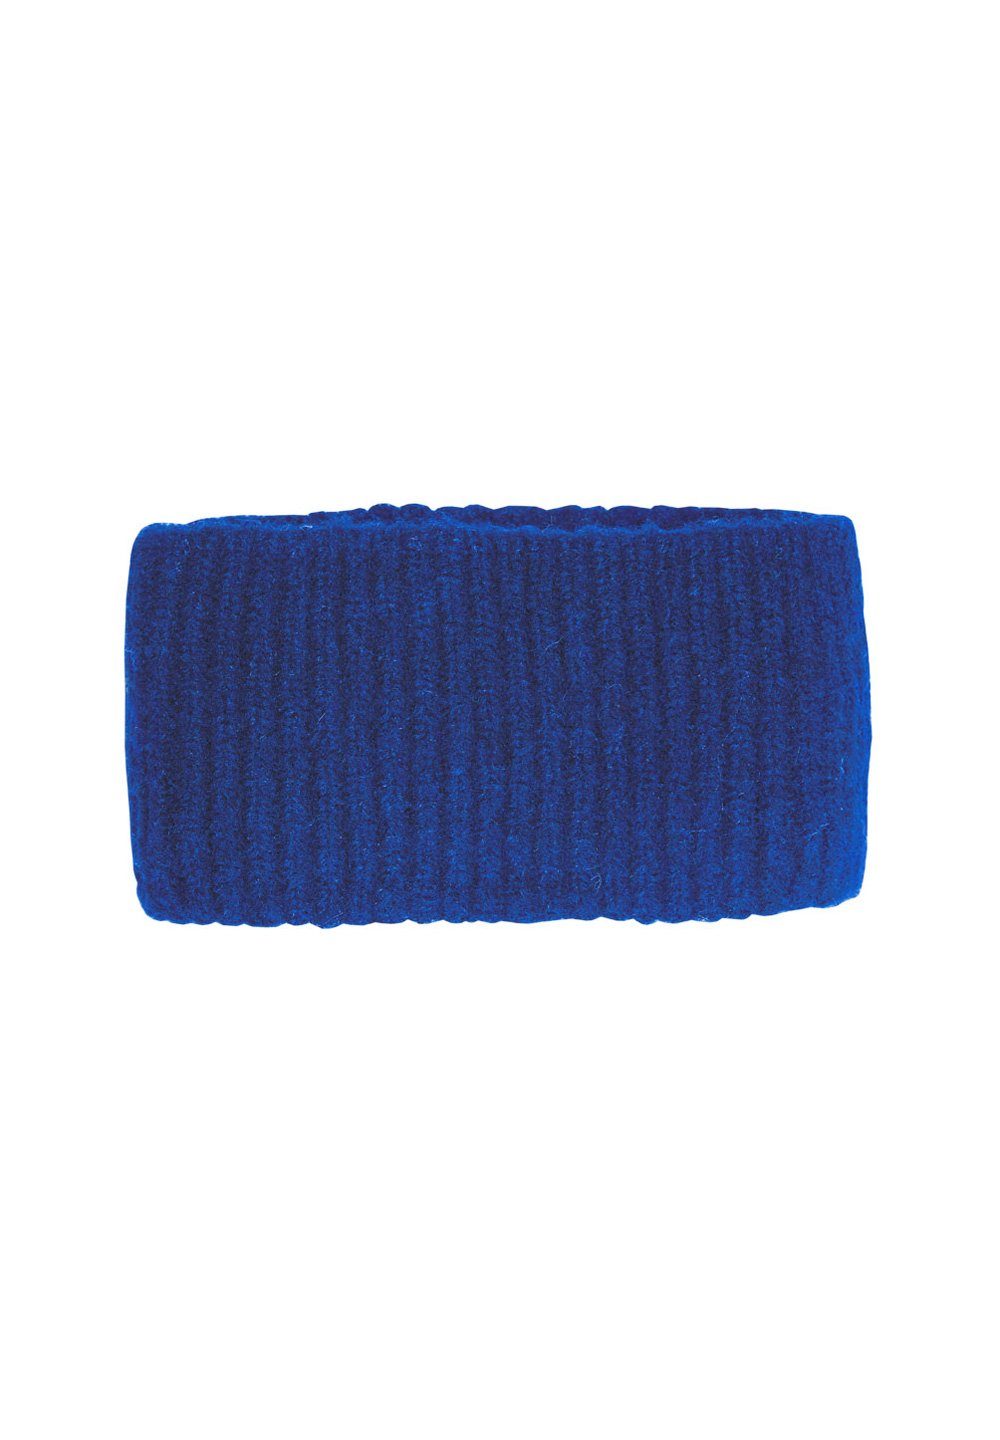 CAPO Stirnband Strickstirnband, soft Fleecfutter Made in Europe royal